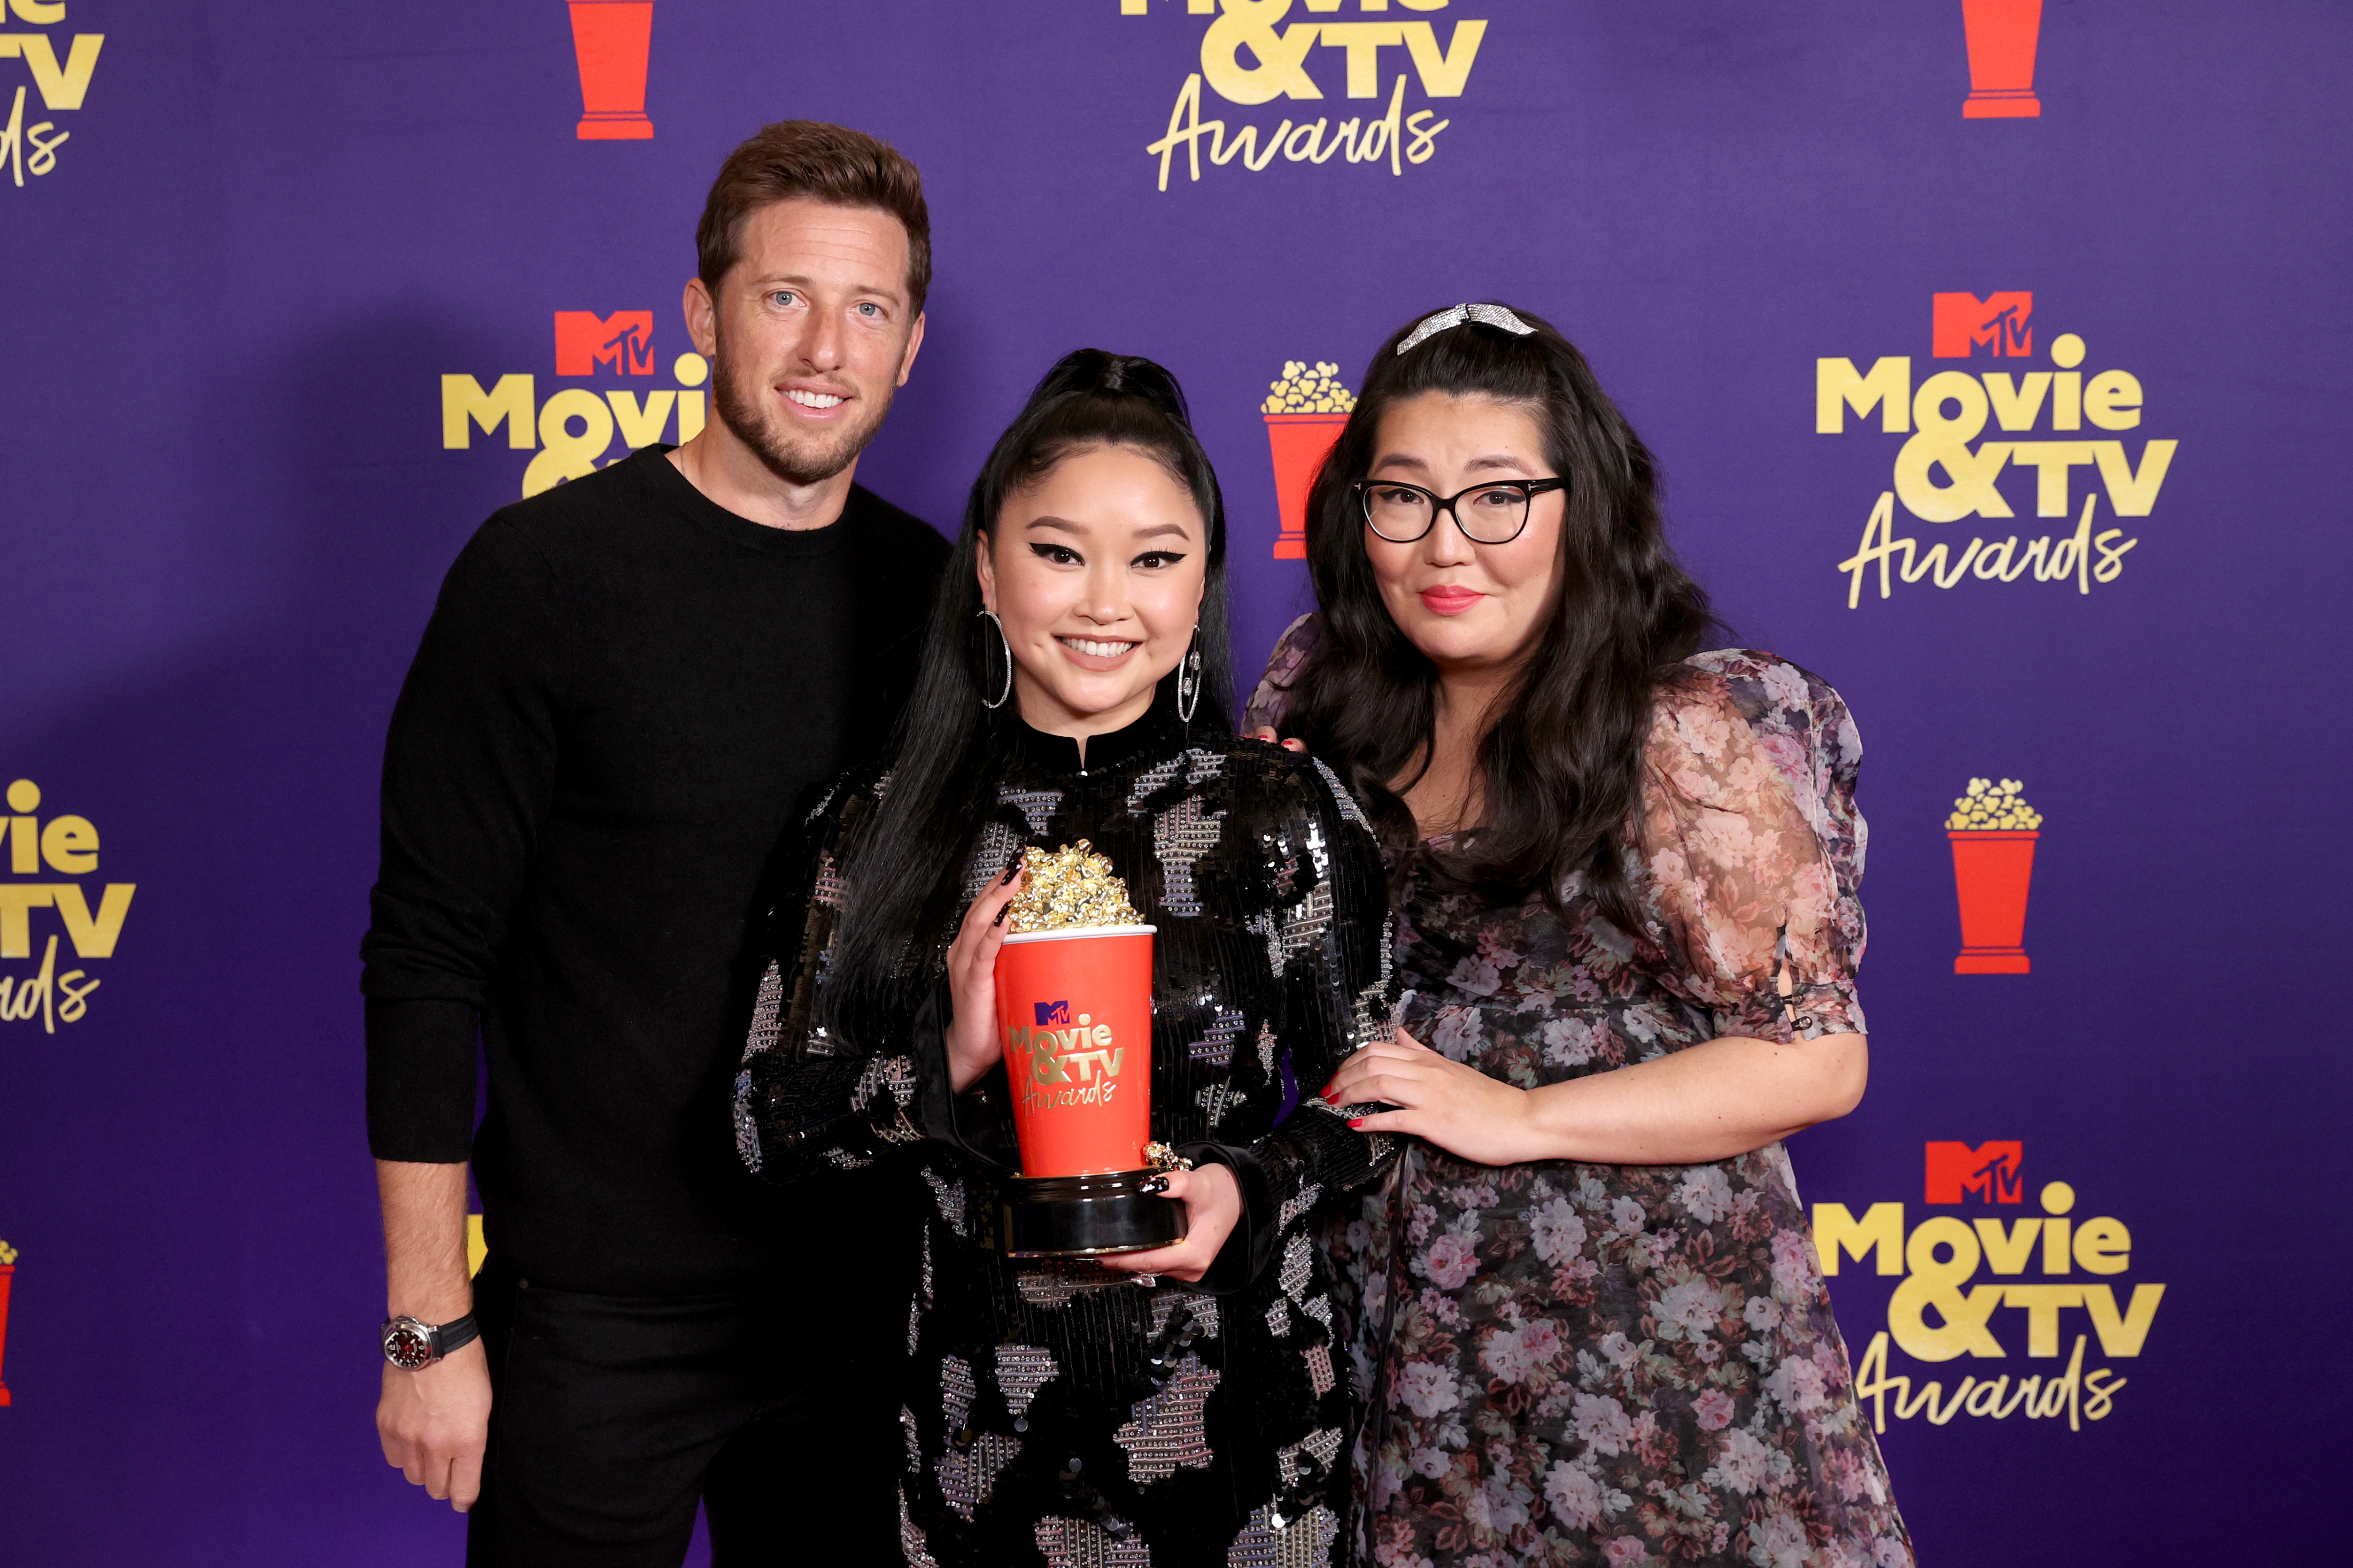 21 Mtv Movie Tv Awards Complete Winners List Celeb Secrets